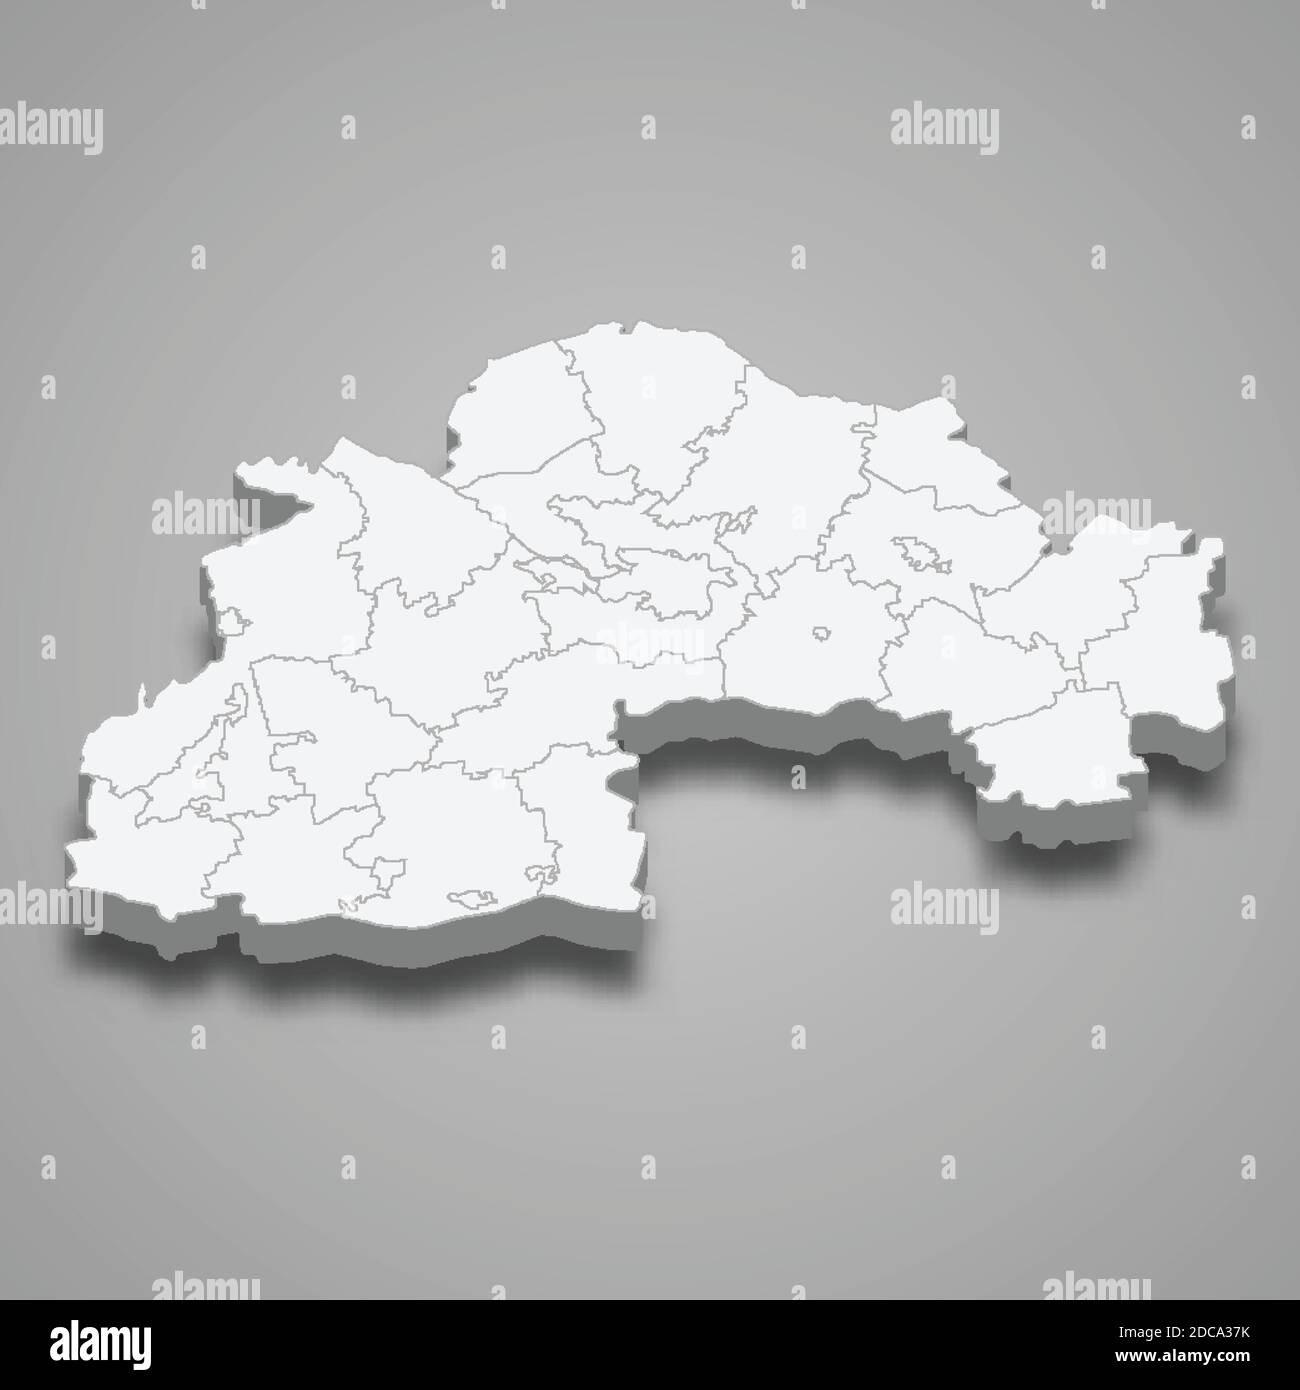 La mappa isometrica 3d dell'oblast è una regione dell'Ucraina, illustrazione vettoriale Illustrazione Vettoriale